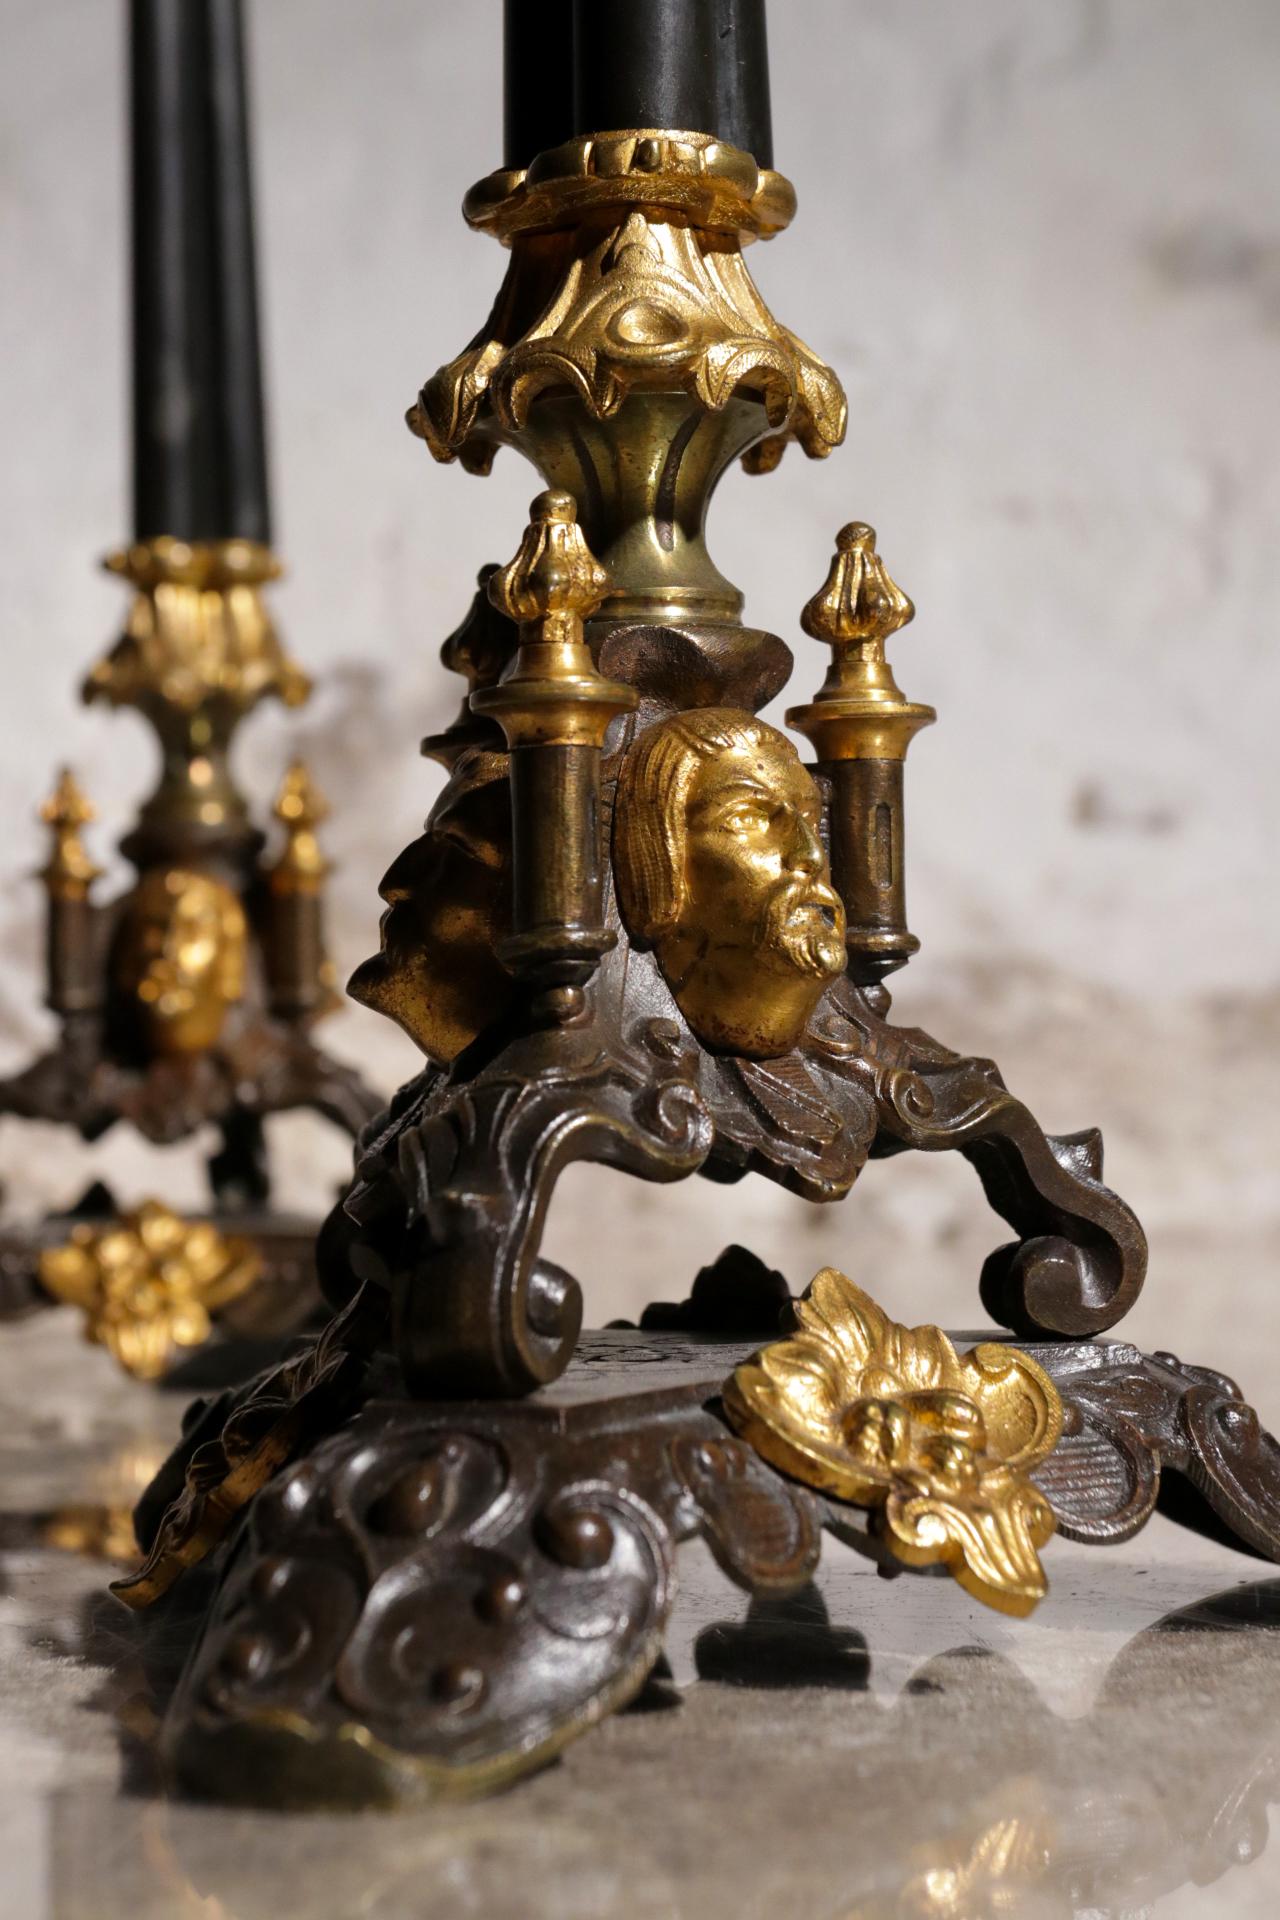 Ein Paar Neorenaissance-Kerzenhalter aus der zweiten Hälfte des 19. Jahrhunderts.
Von allen Seiten reich verziert, also perfekt für den Esstisch.
Wunderbares Geschenk

Abmessungen: 47 cm hoch und Durchmesser der Kerzenarme 19 cm.